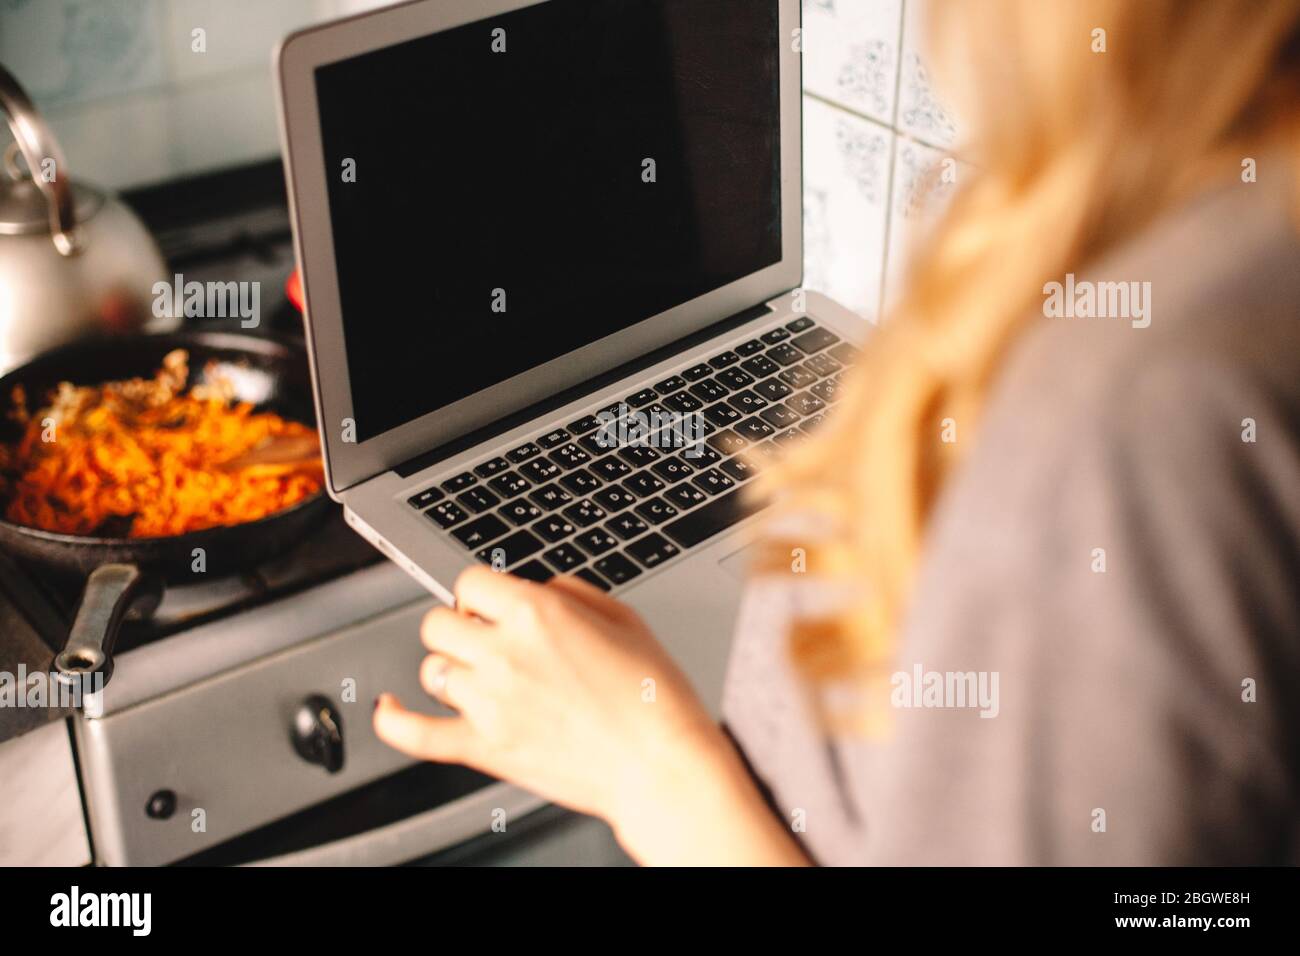 Jeune femme tenant un ordinateur portable pendant la cuisson de la nourriture dans la cuisine Banque D'Images